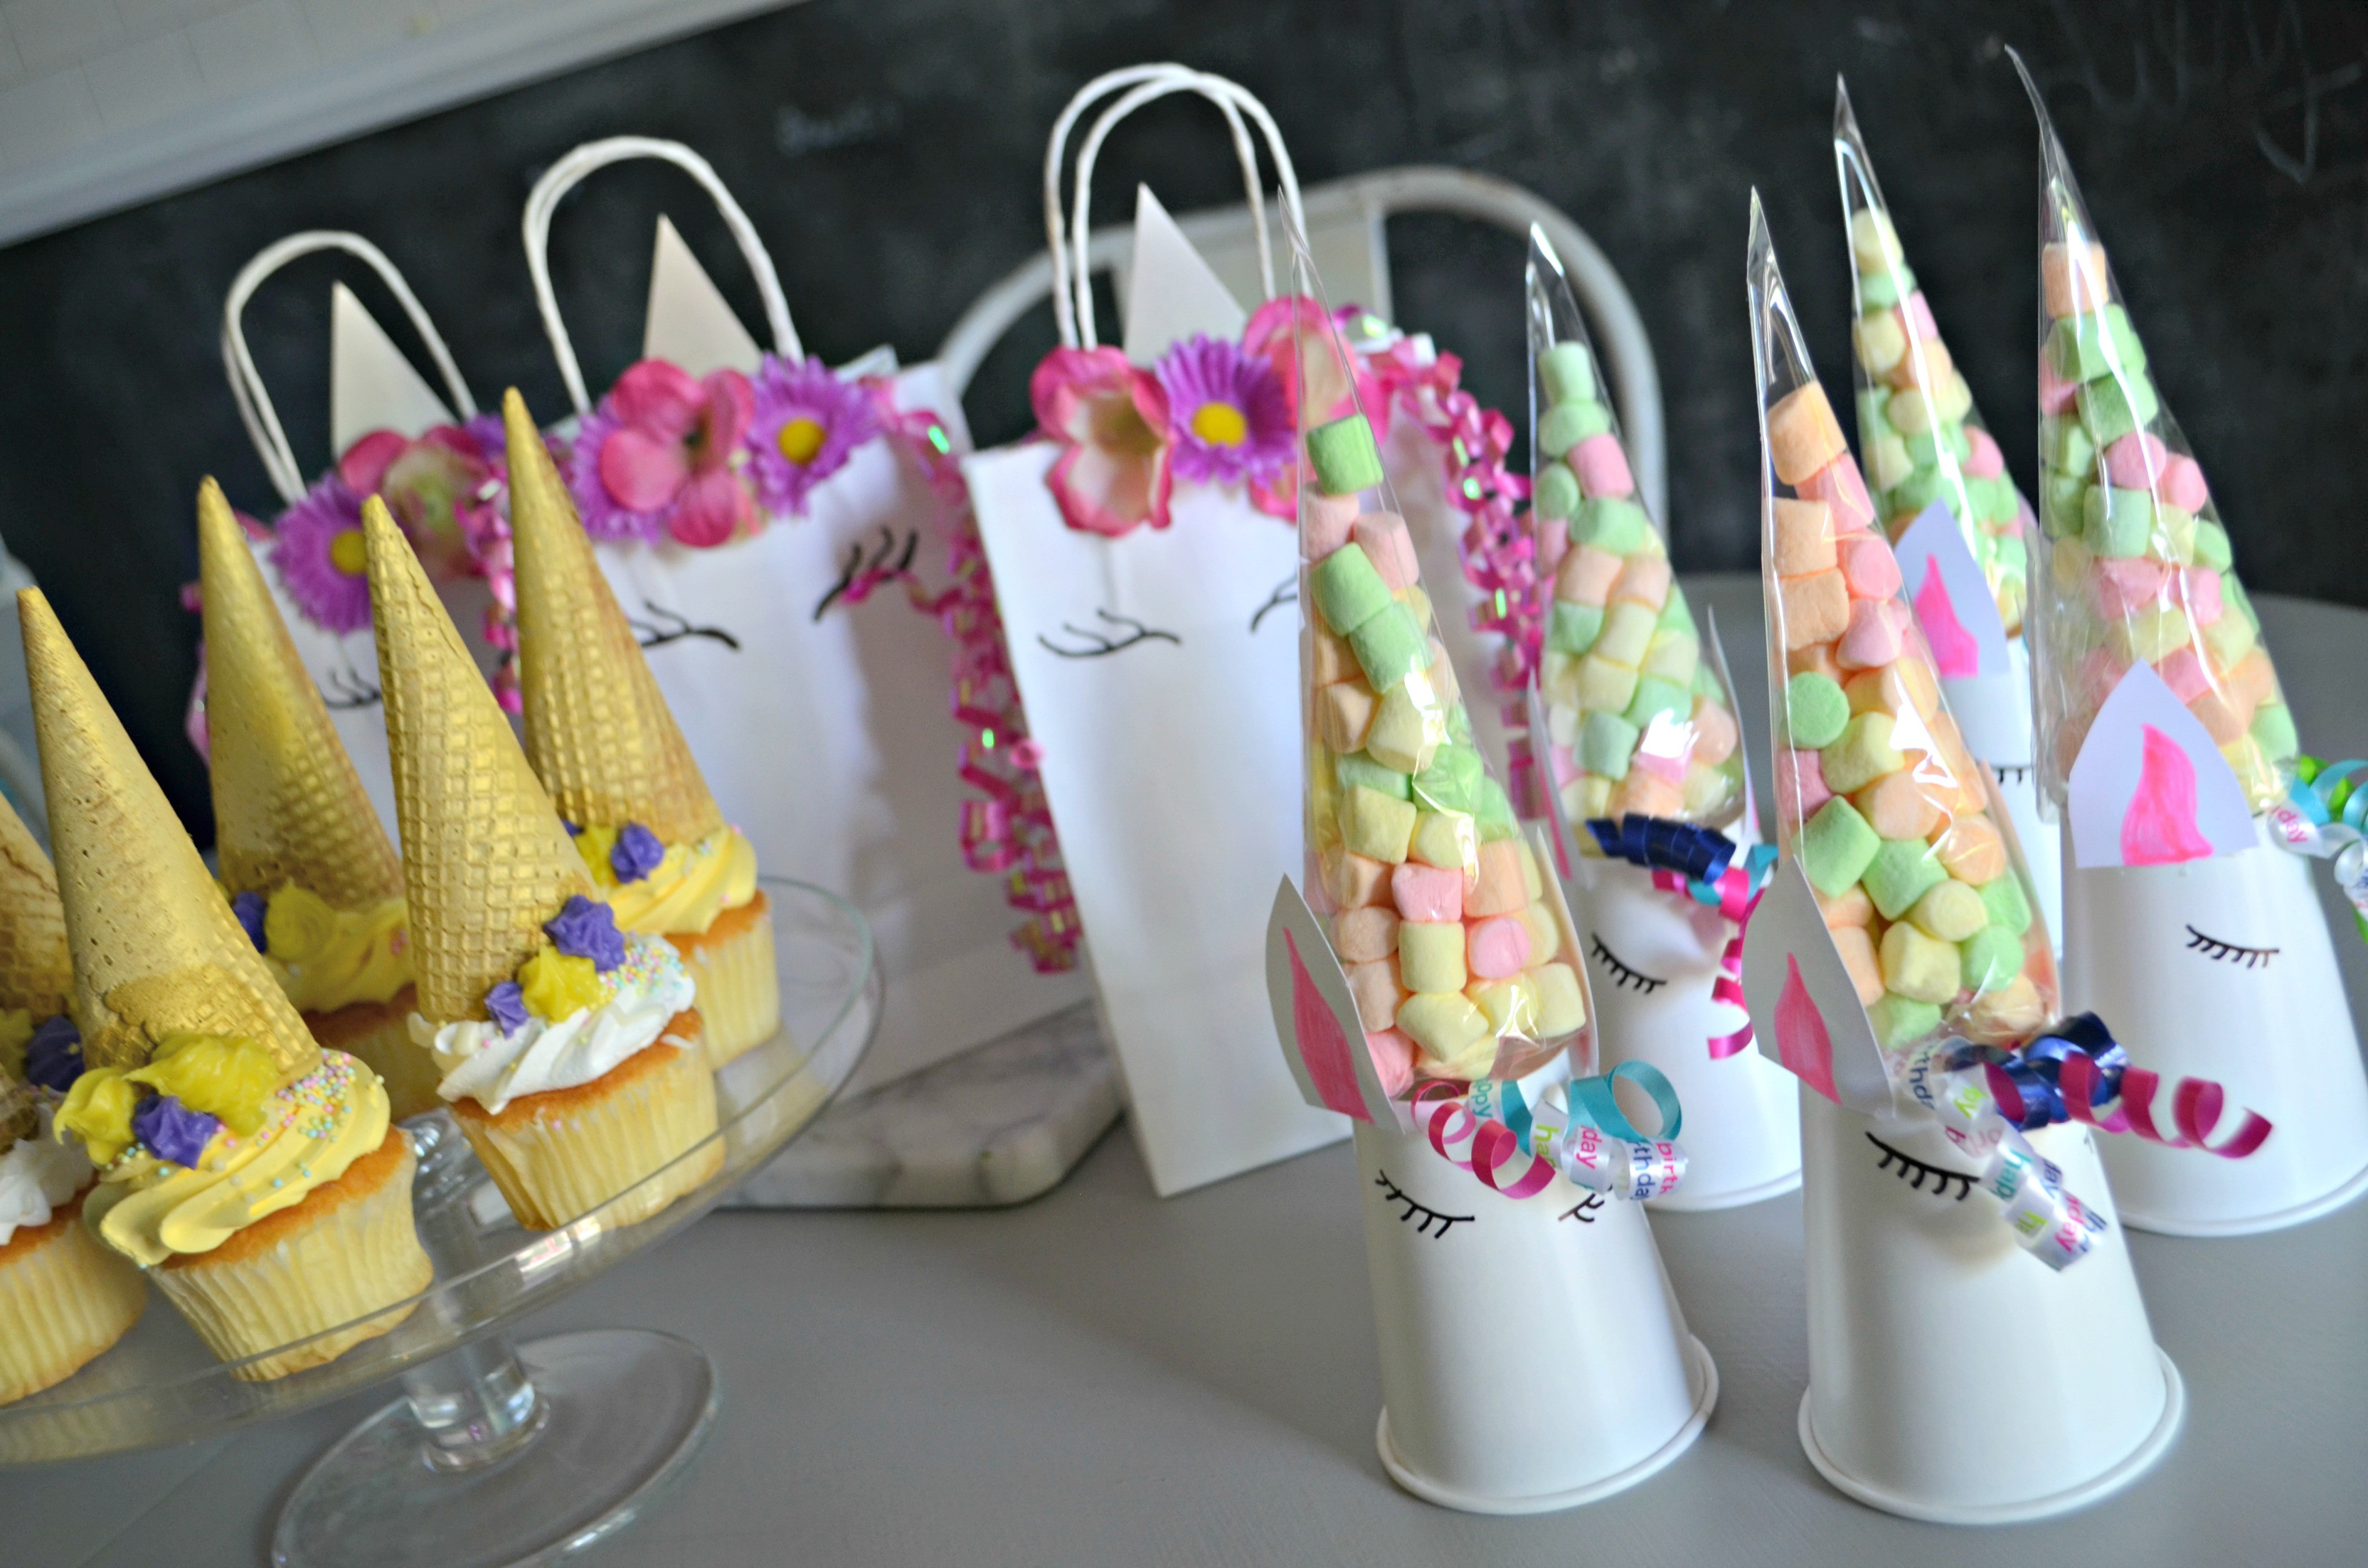 Unicorn Birthday Party Ideas Diy
 Make These 3 Frugal Cute and Easy DIY Unicorn Birthday